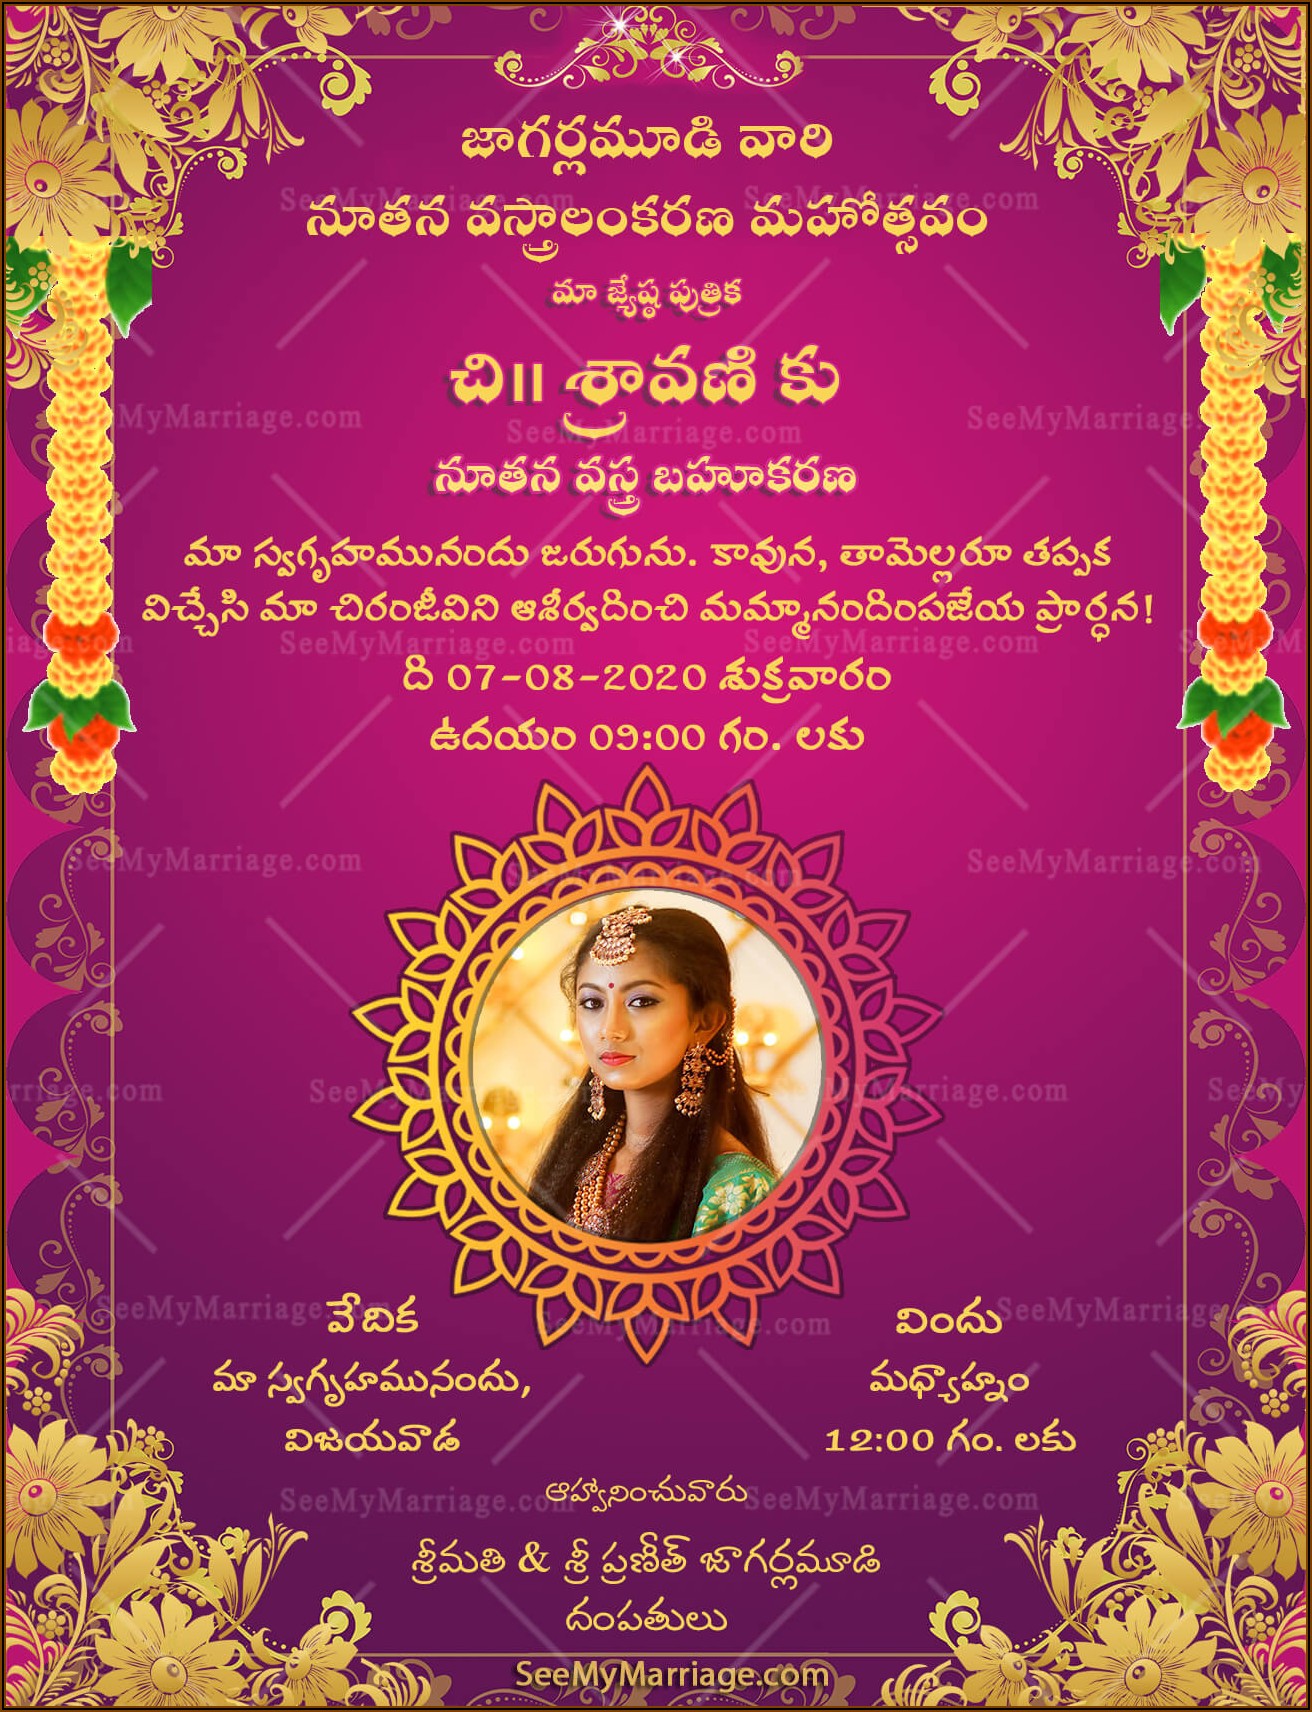 Cradle Ceremony Invitation Message In Telugu